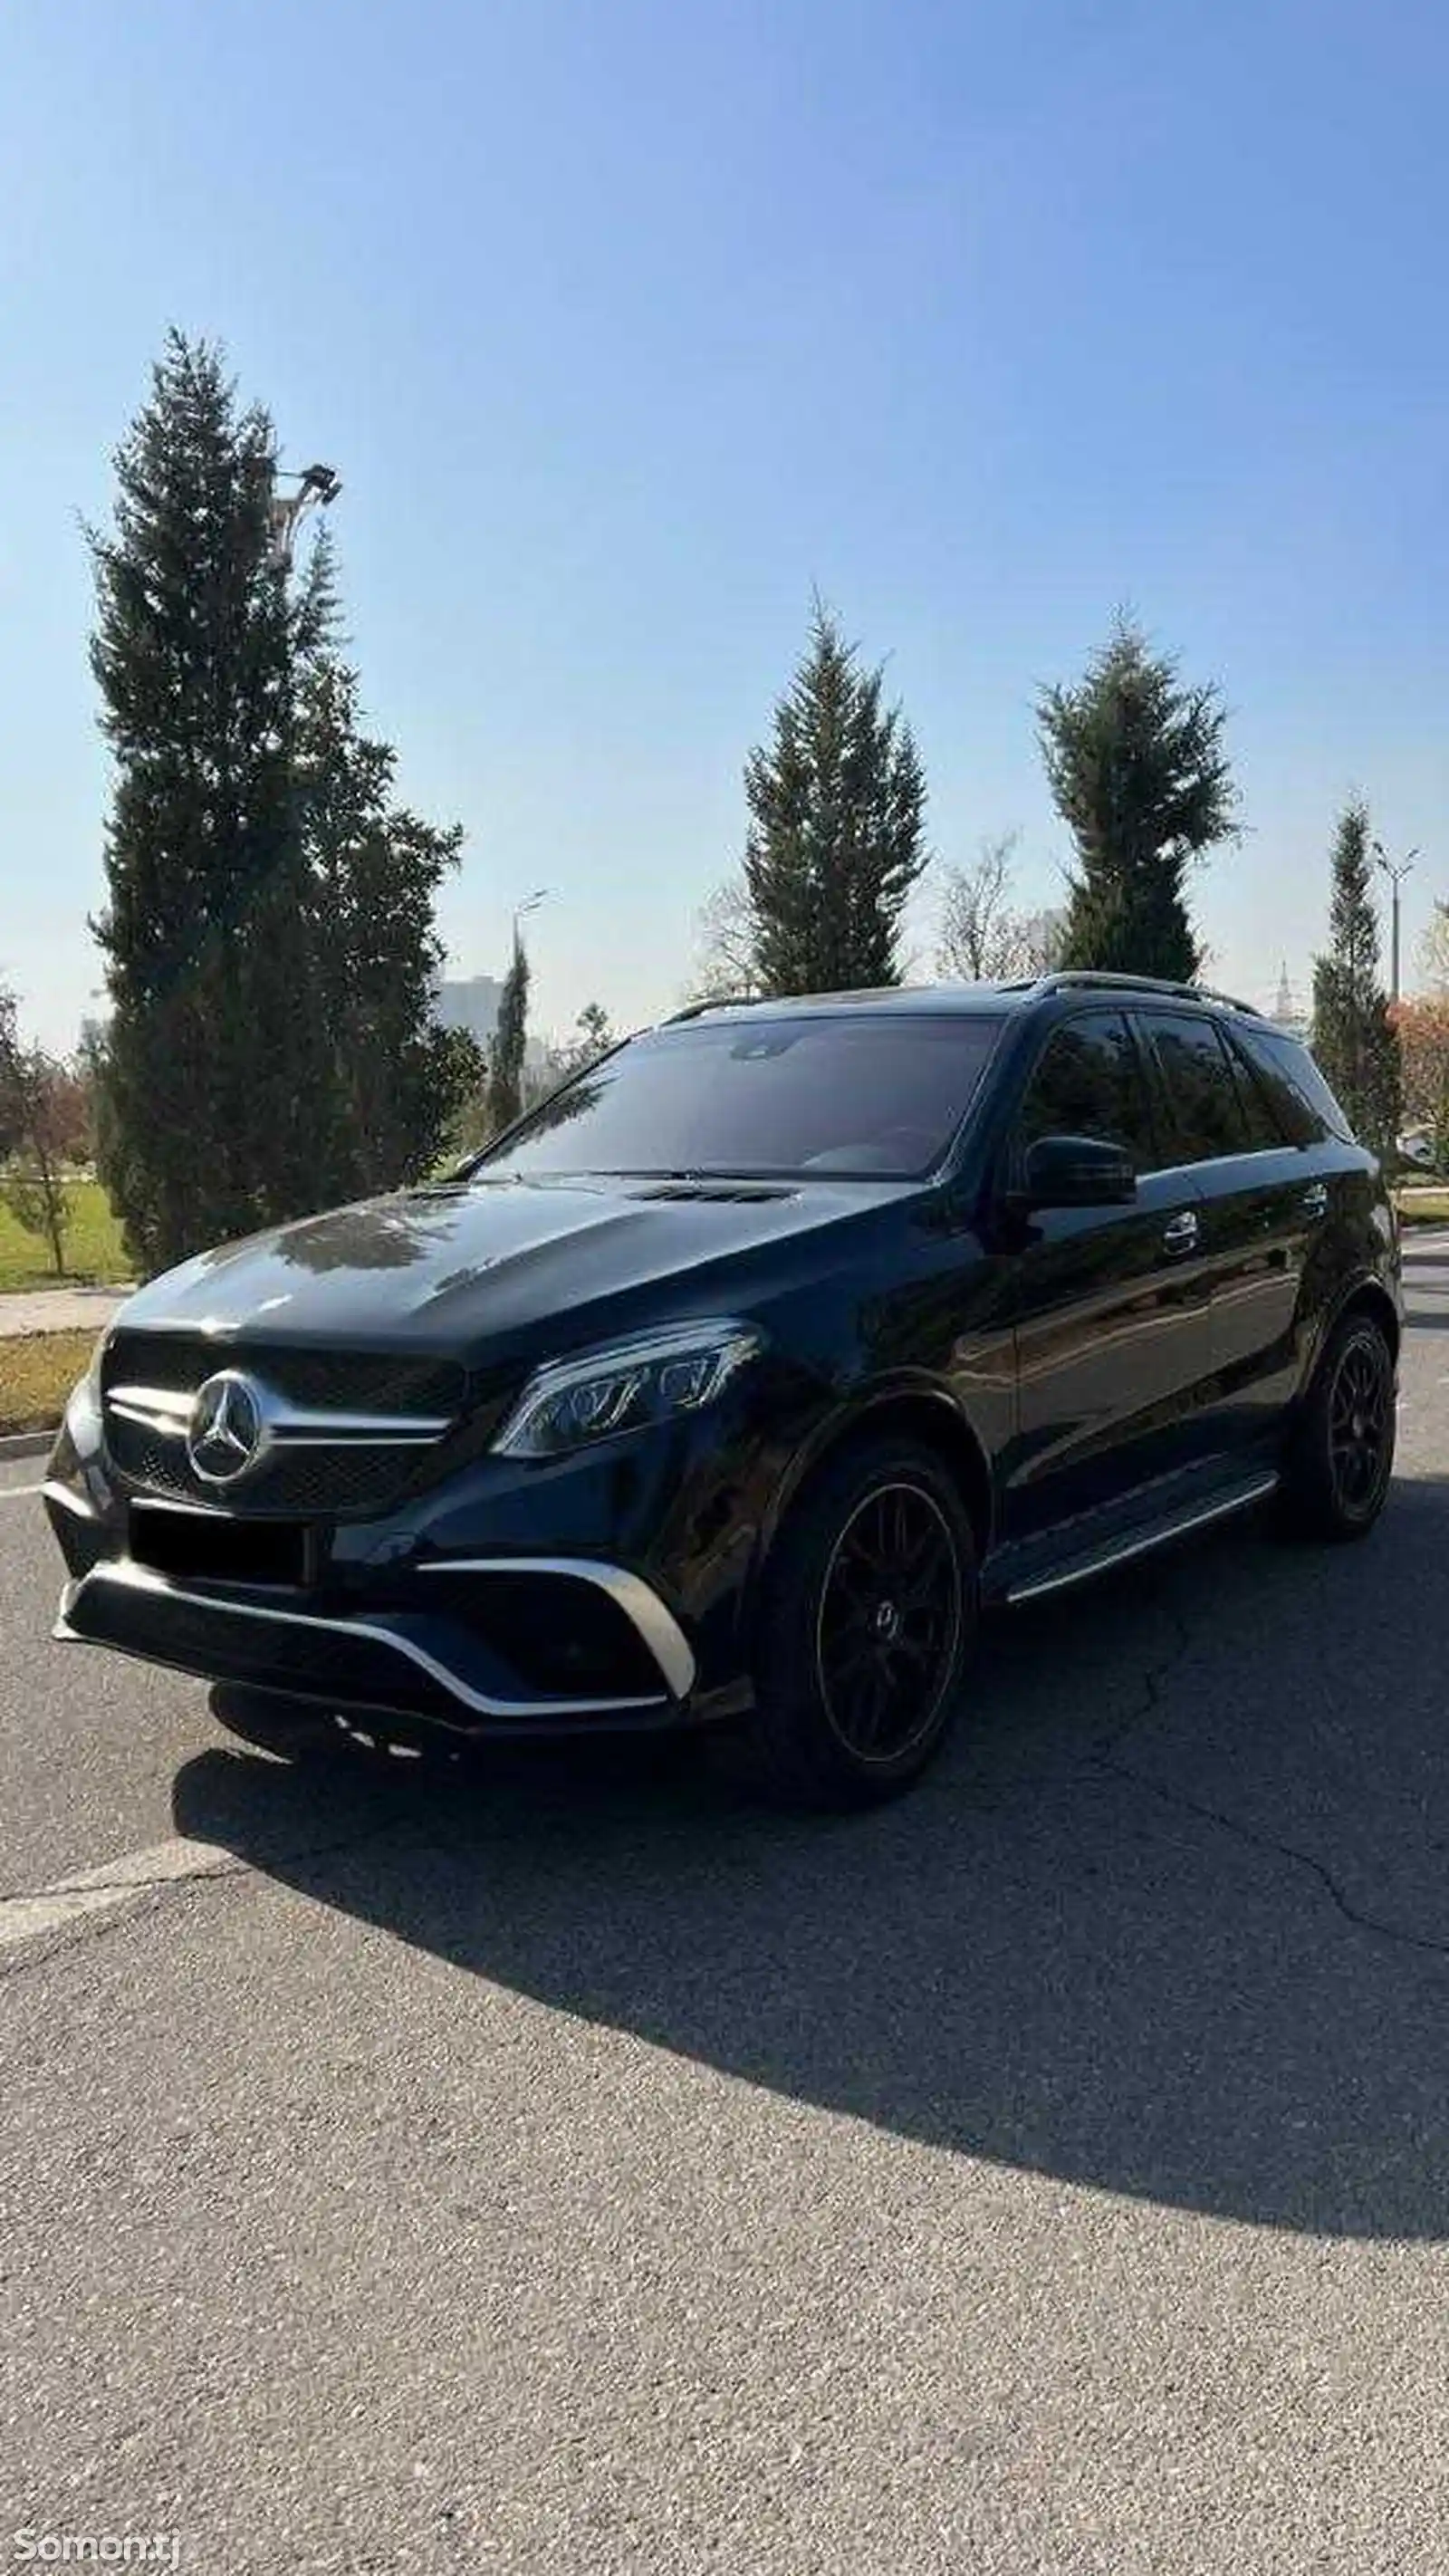 Mercedes-Benz ML class, 2014-2